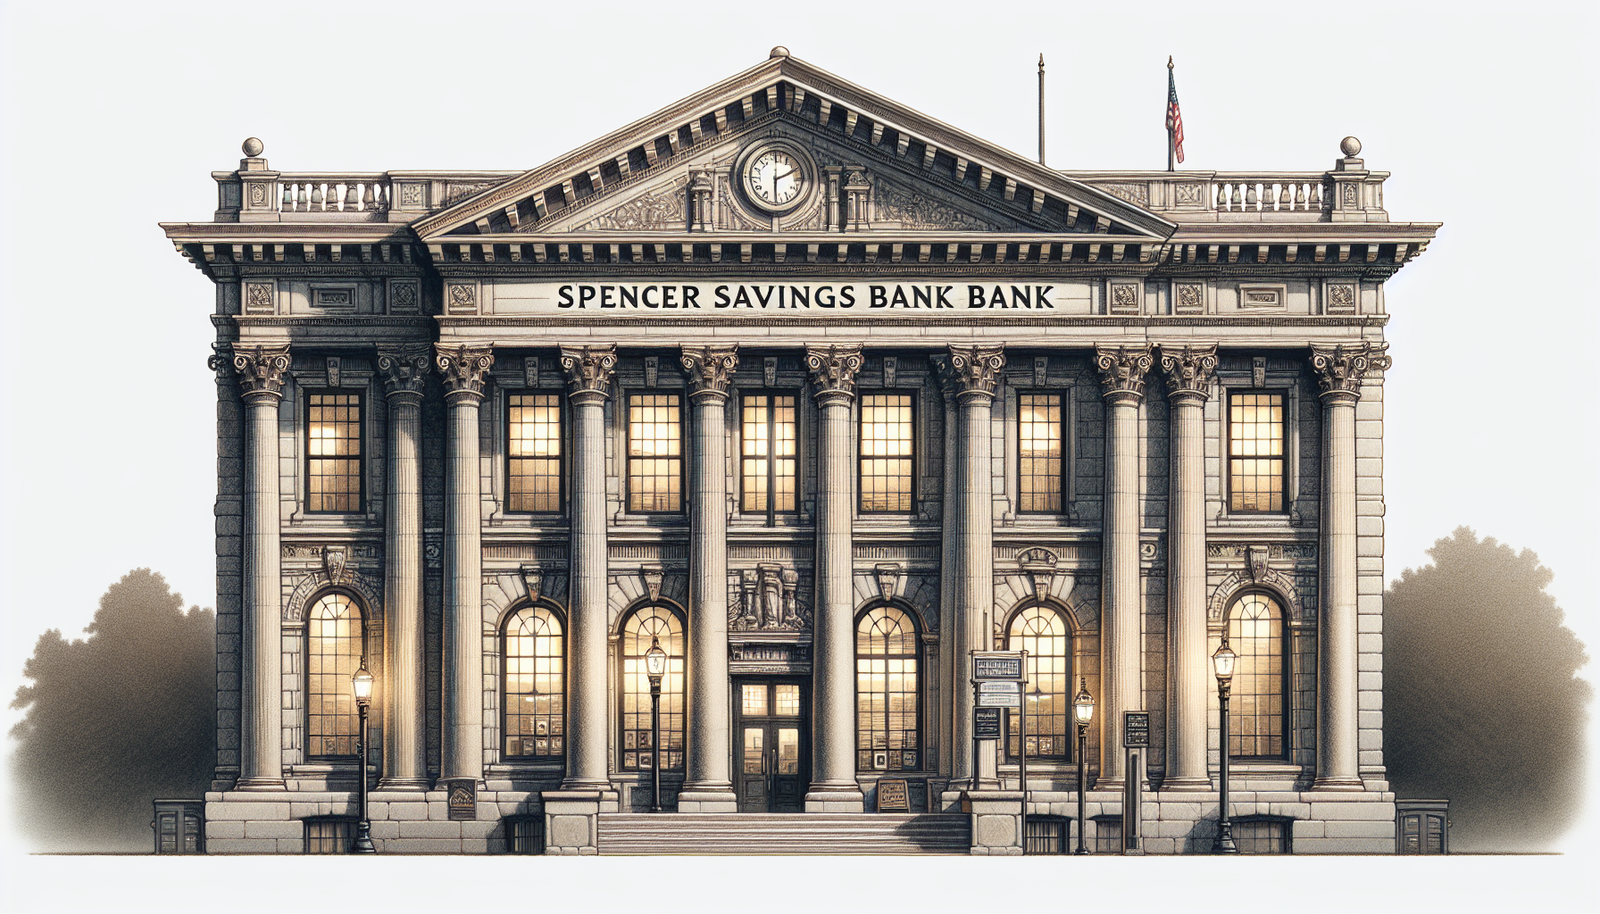 Spencer Savings Bank